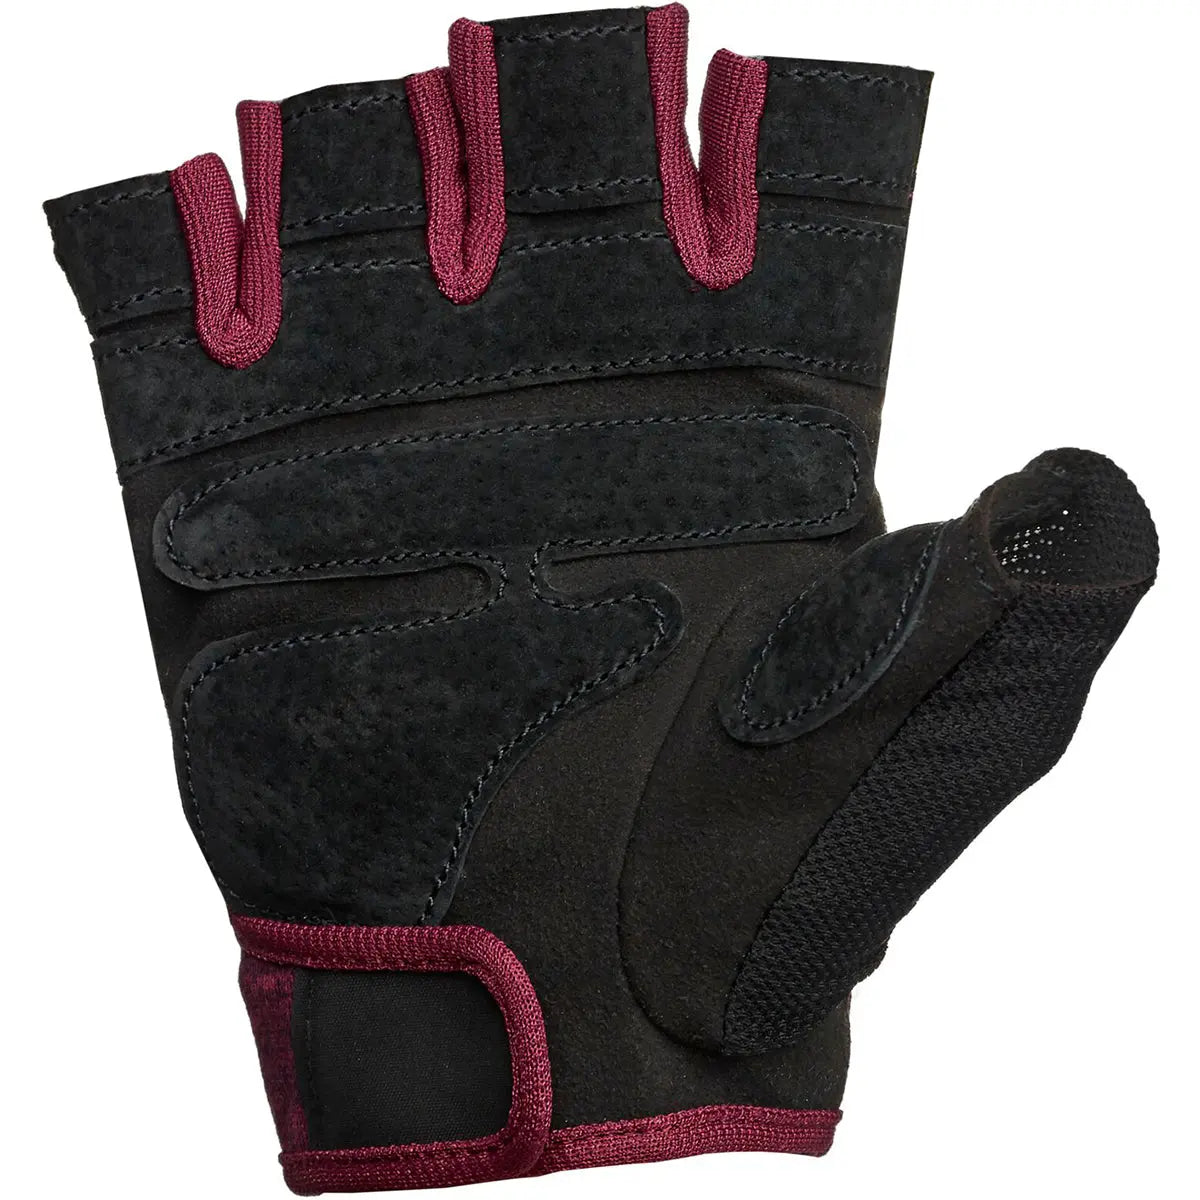 Harbinger Women's FlexFit Weight Lifting Gloves - Black/Merlot Harbinger